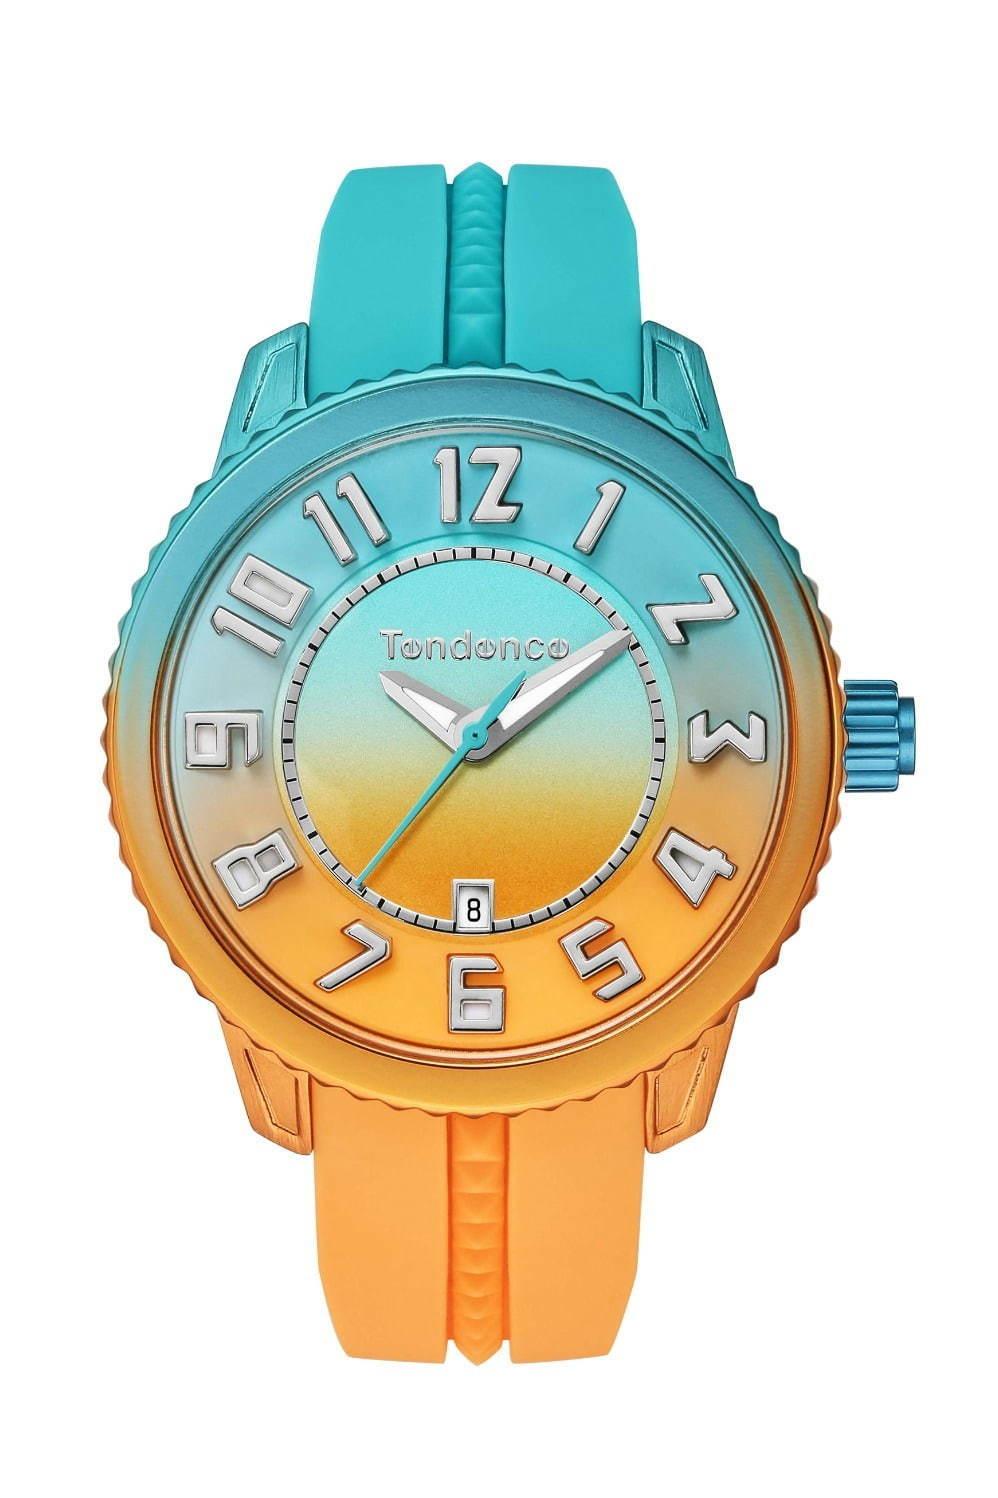 スイス時計ブランド「テンデンス」グラデーションカラーの新作腕時計、空やビーチ着想の3種 コピー